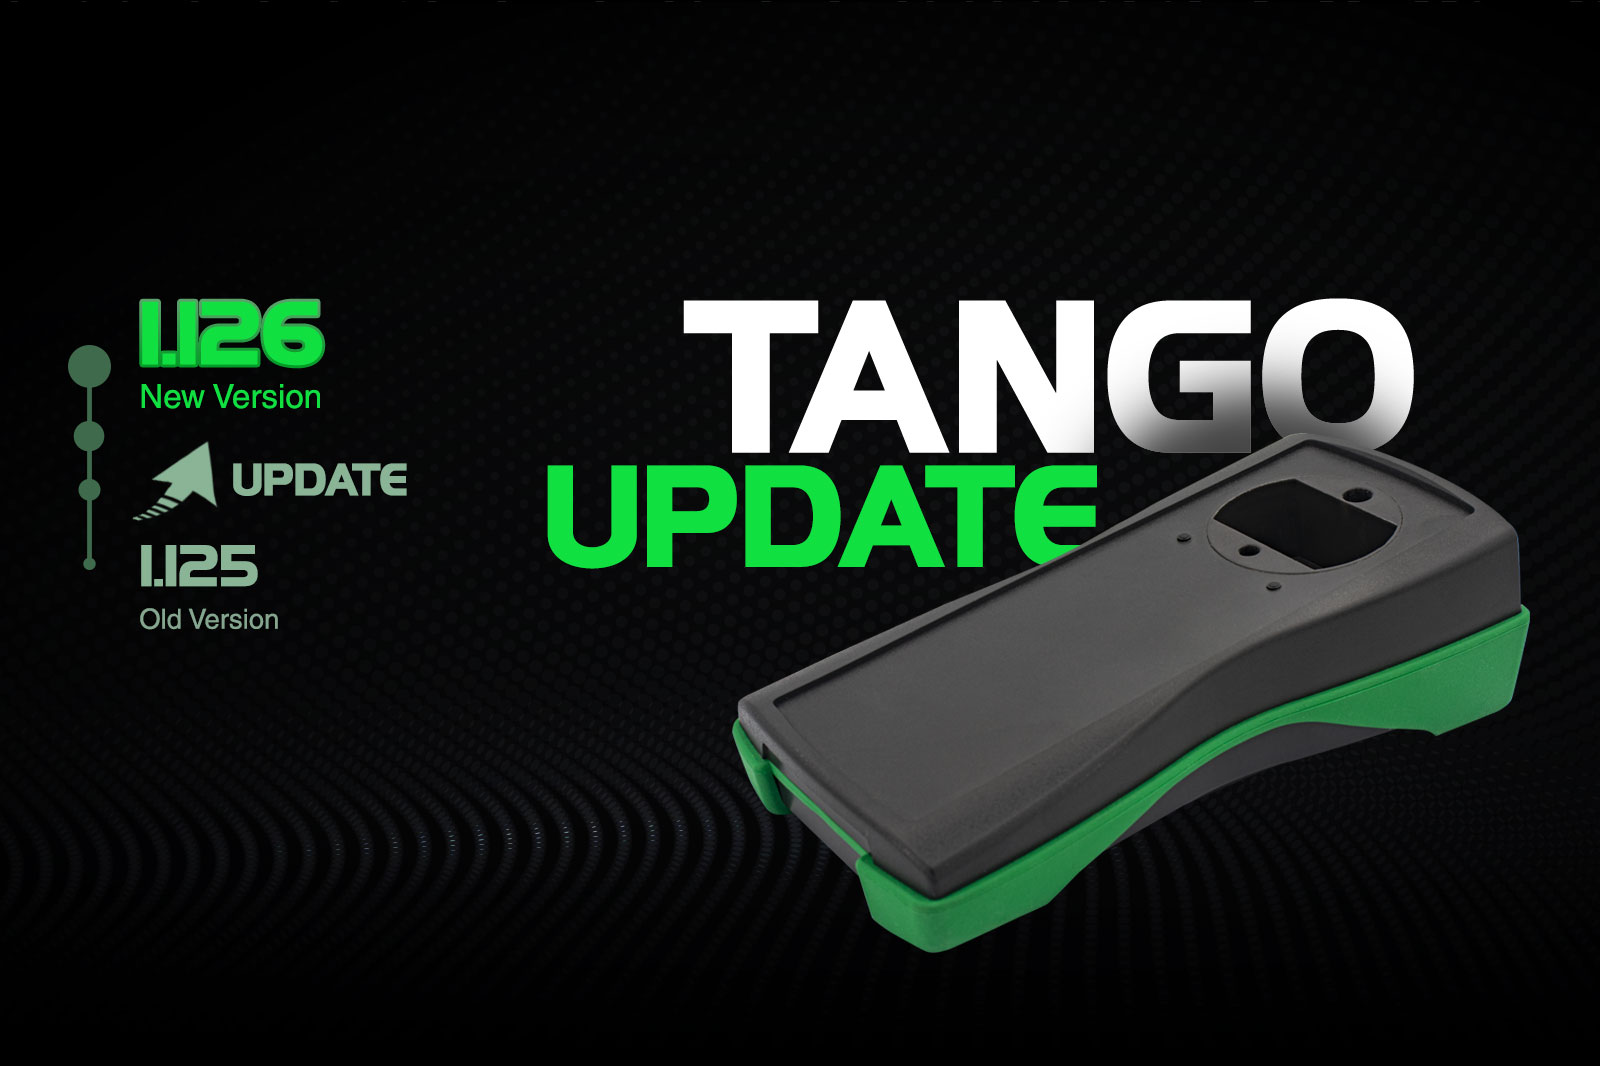 Tango Update! New Version 1.126